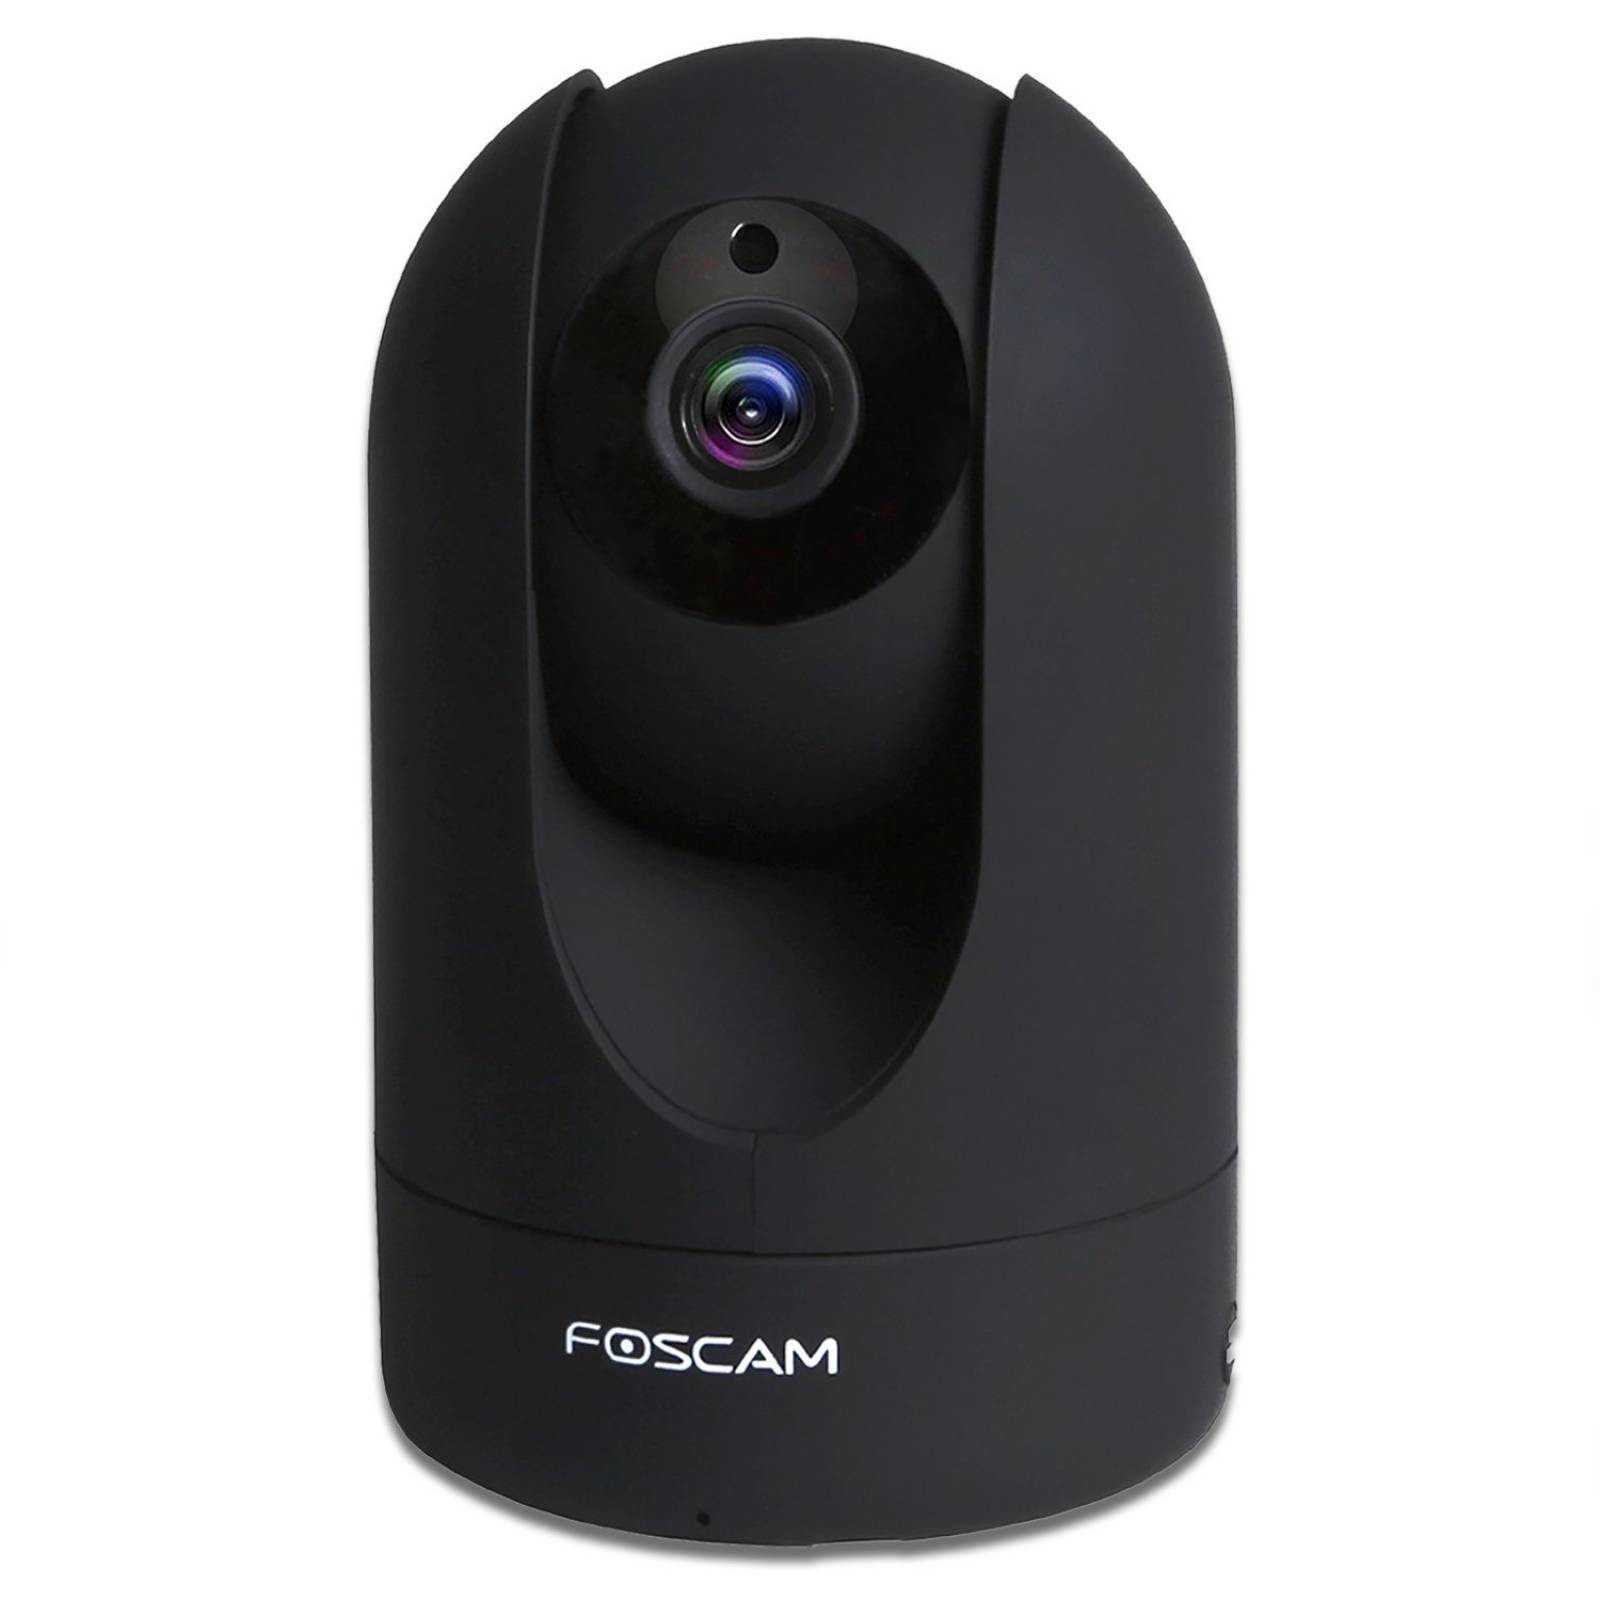 Cámara IP seguridad Foscam R2 1080p HD WiFi iOS/Andro -Negro